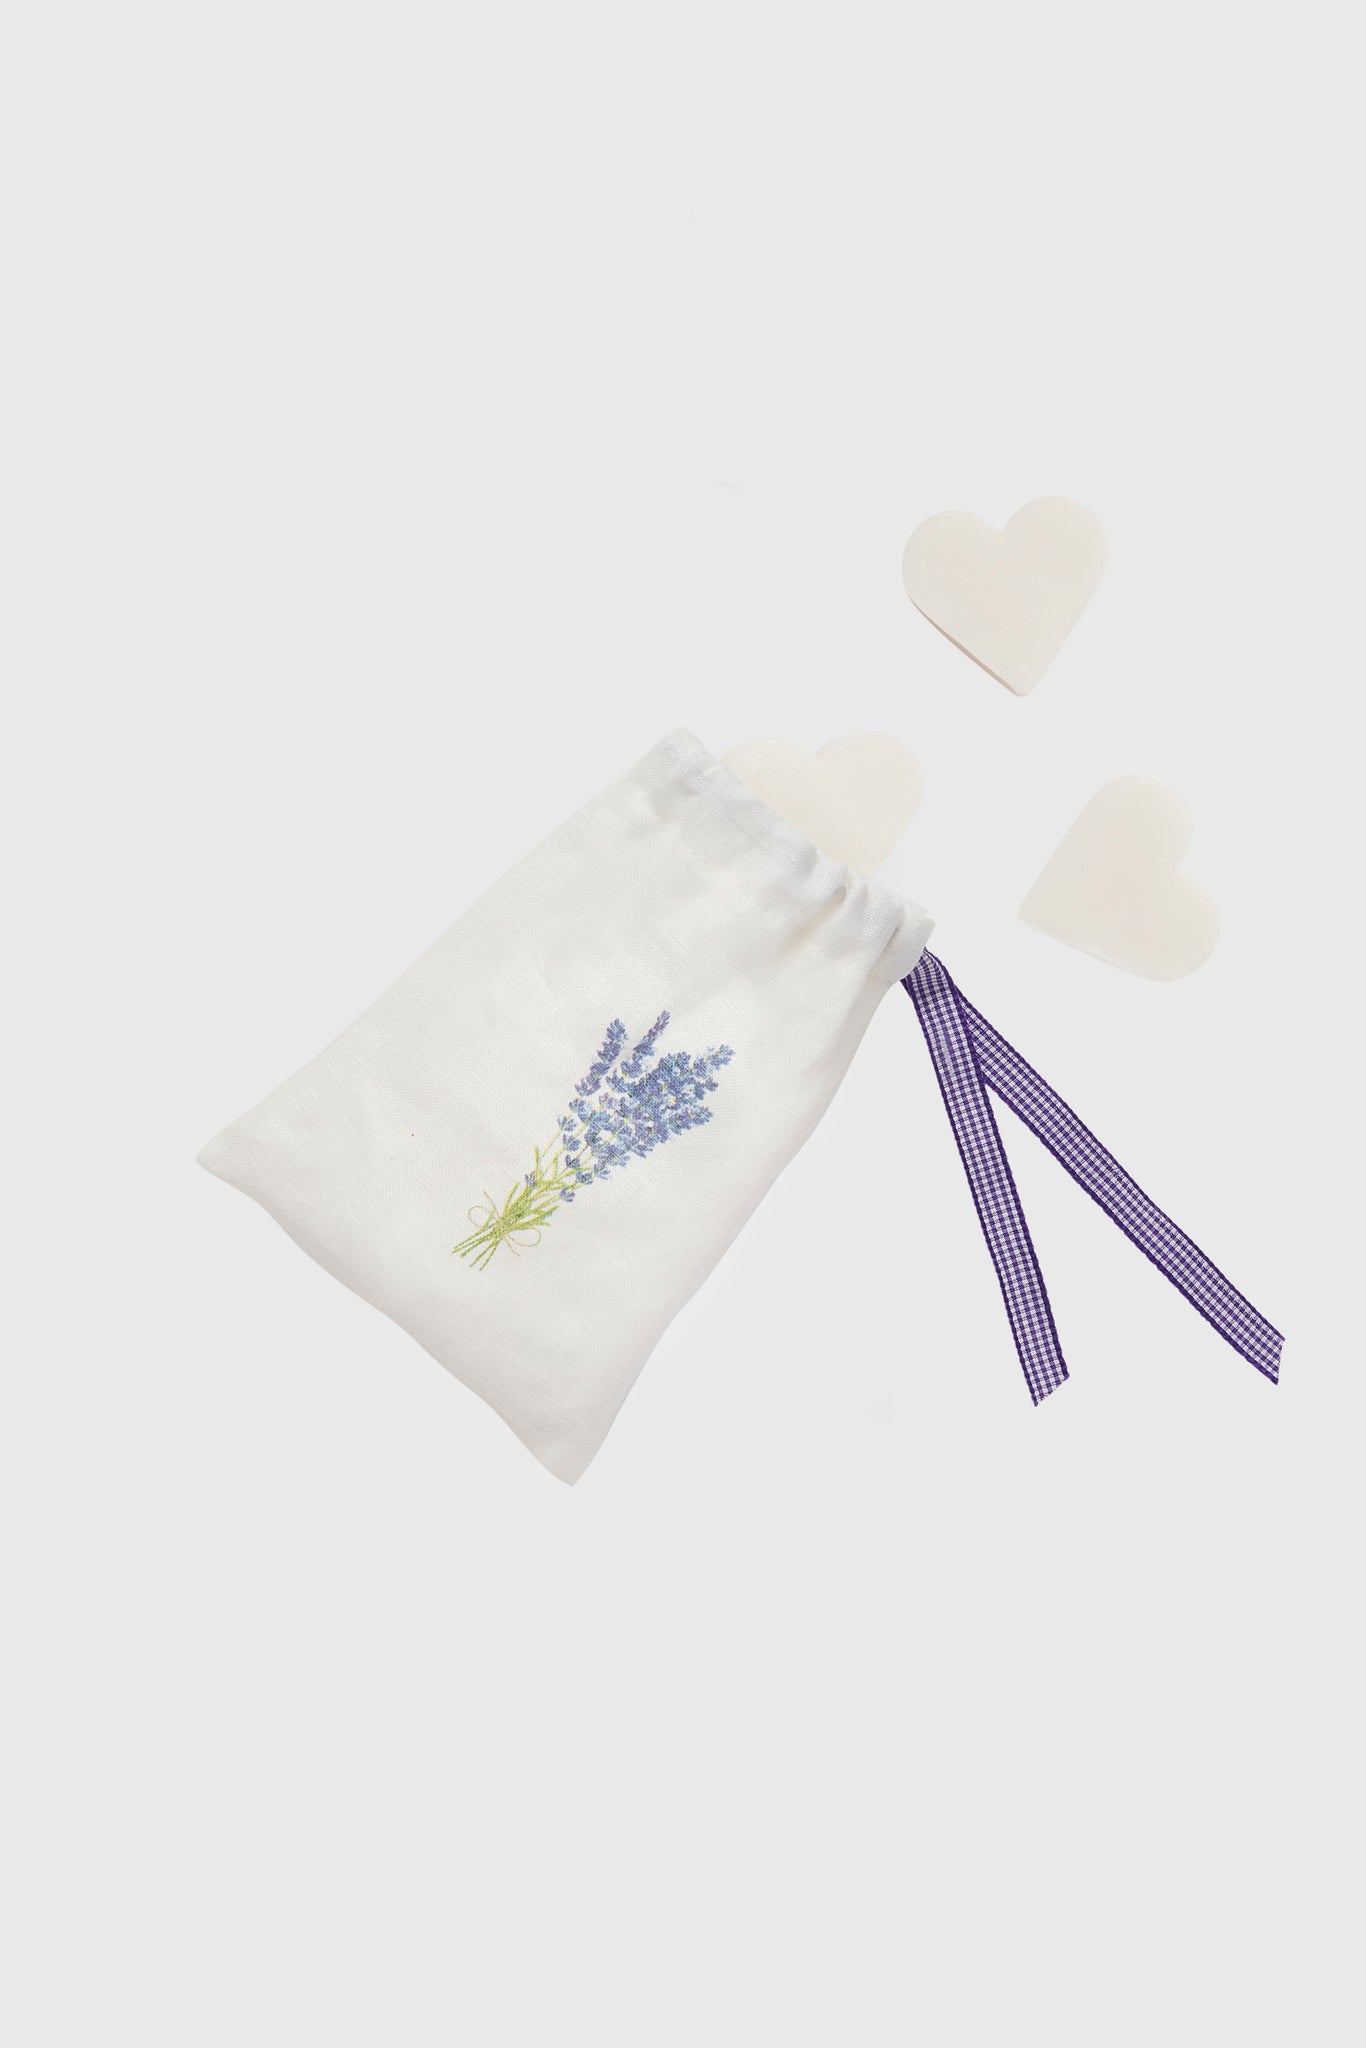 Lavender Soap Gift Bag